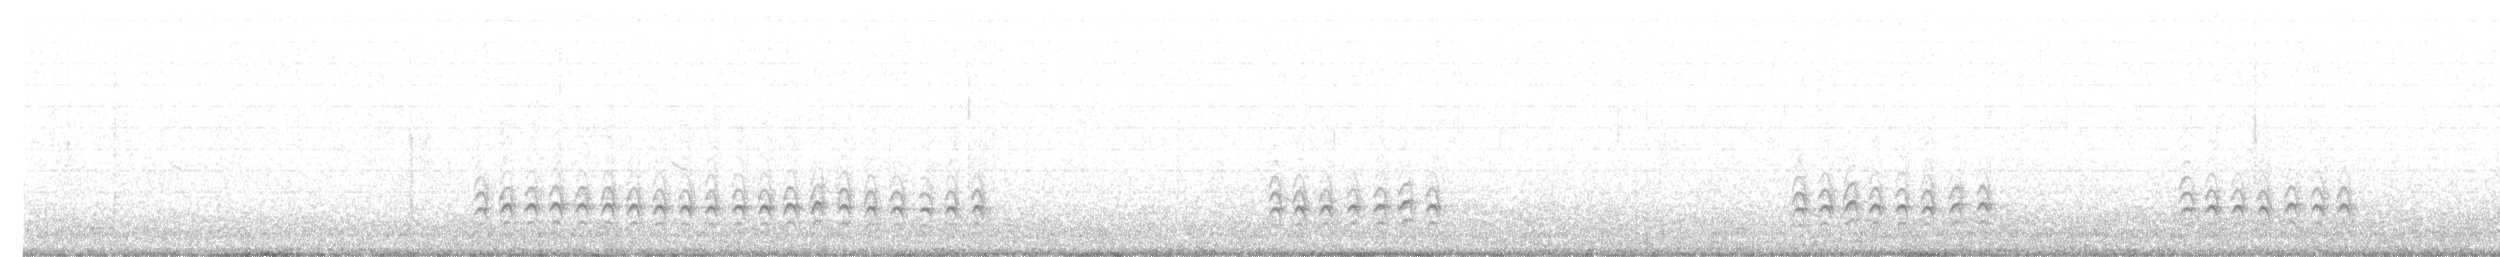 Sittelle à poitrine blanche (groupe lagunae) - ML51810391